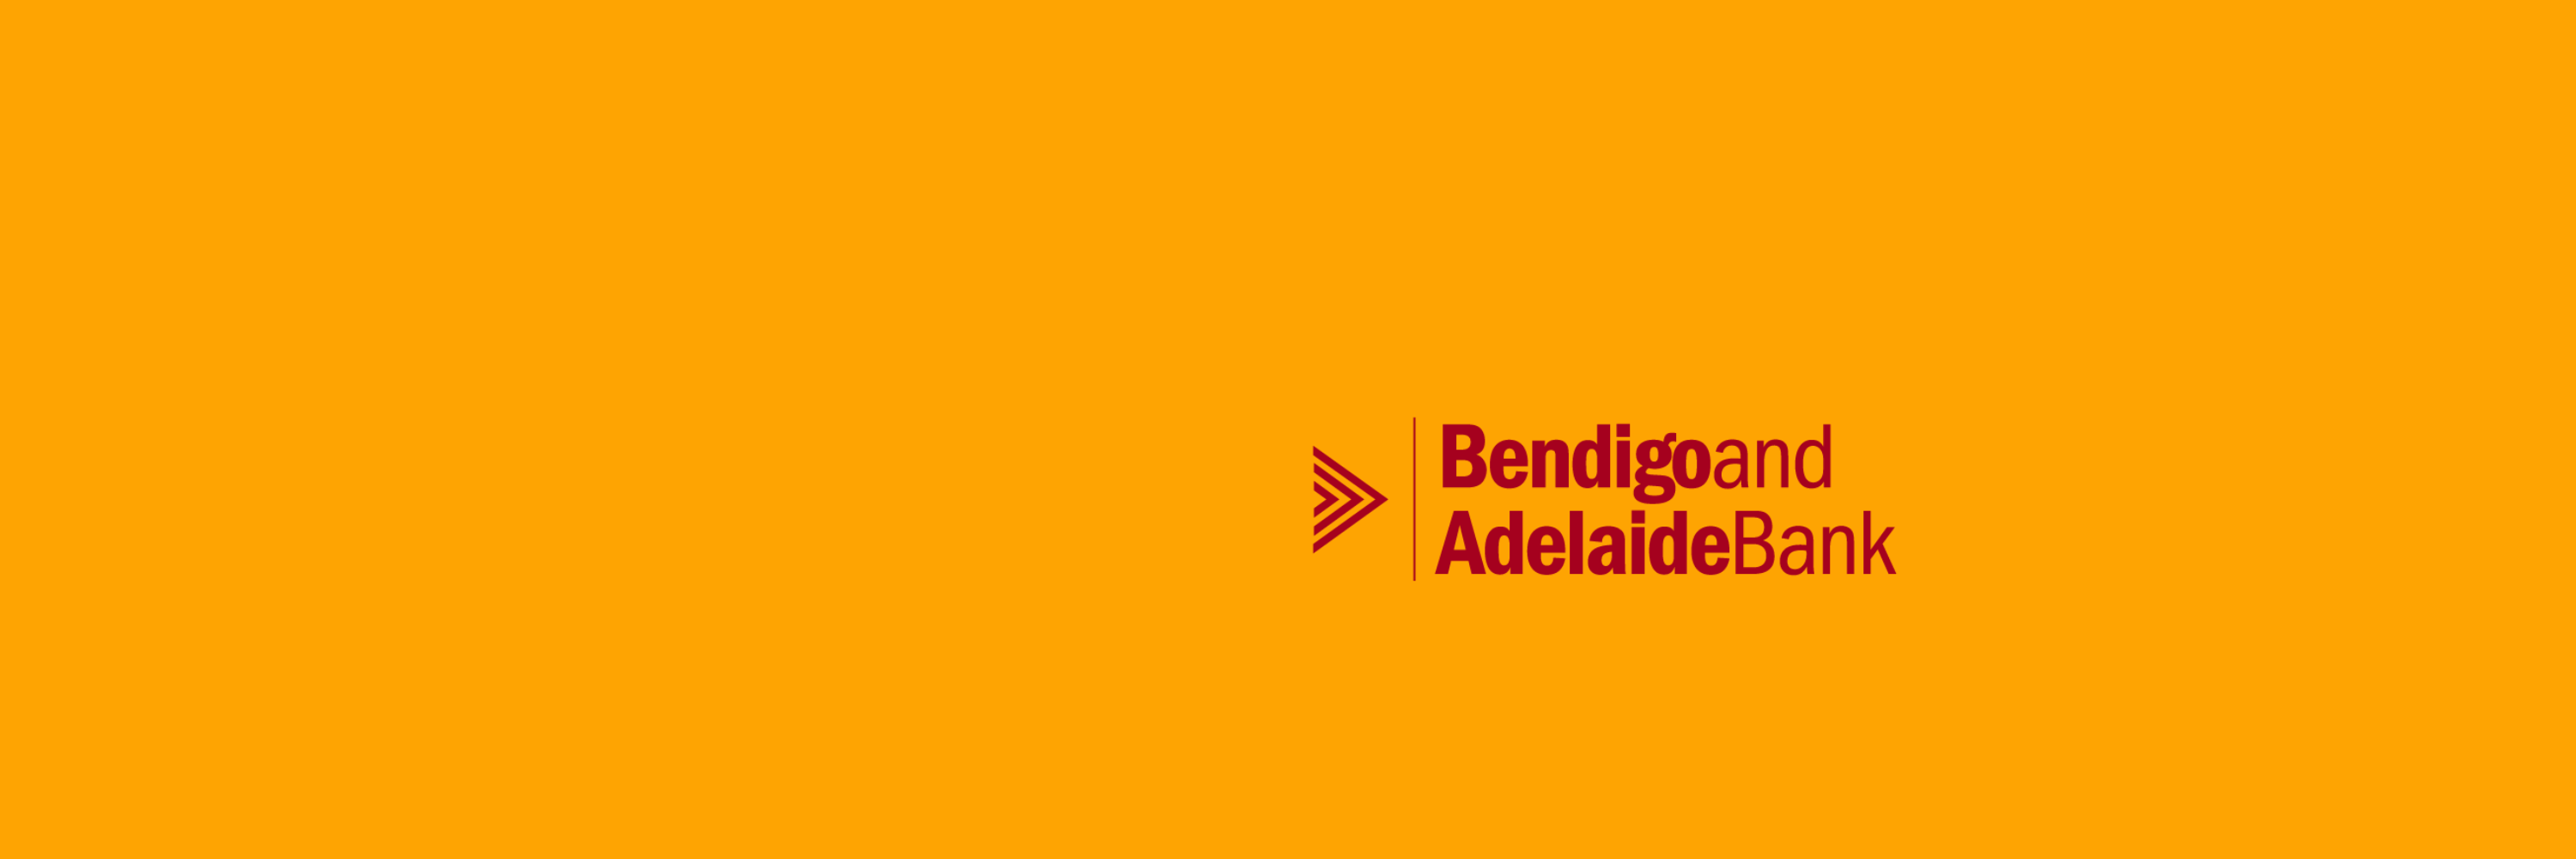 bendigo and adelaide bank logo